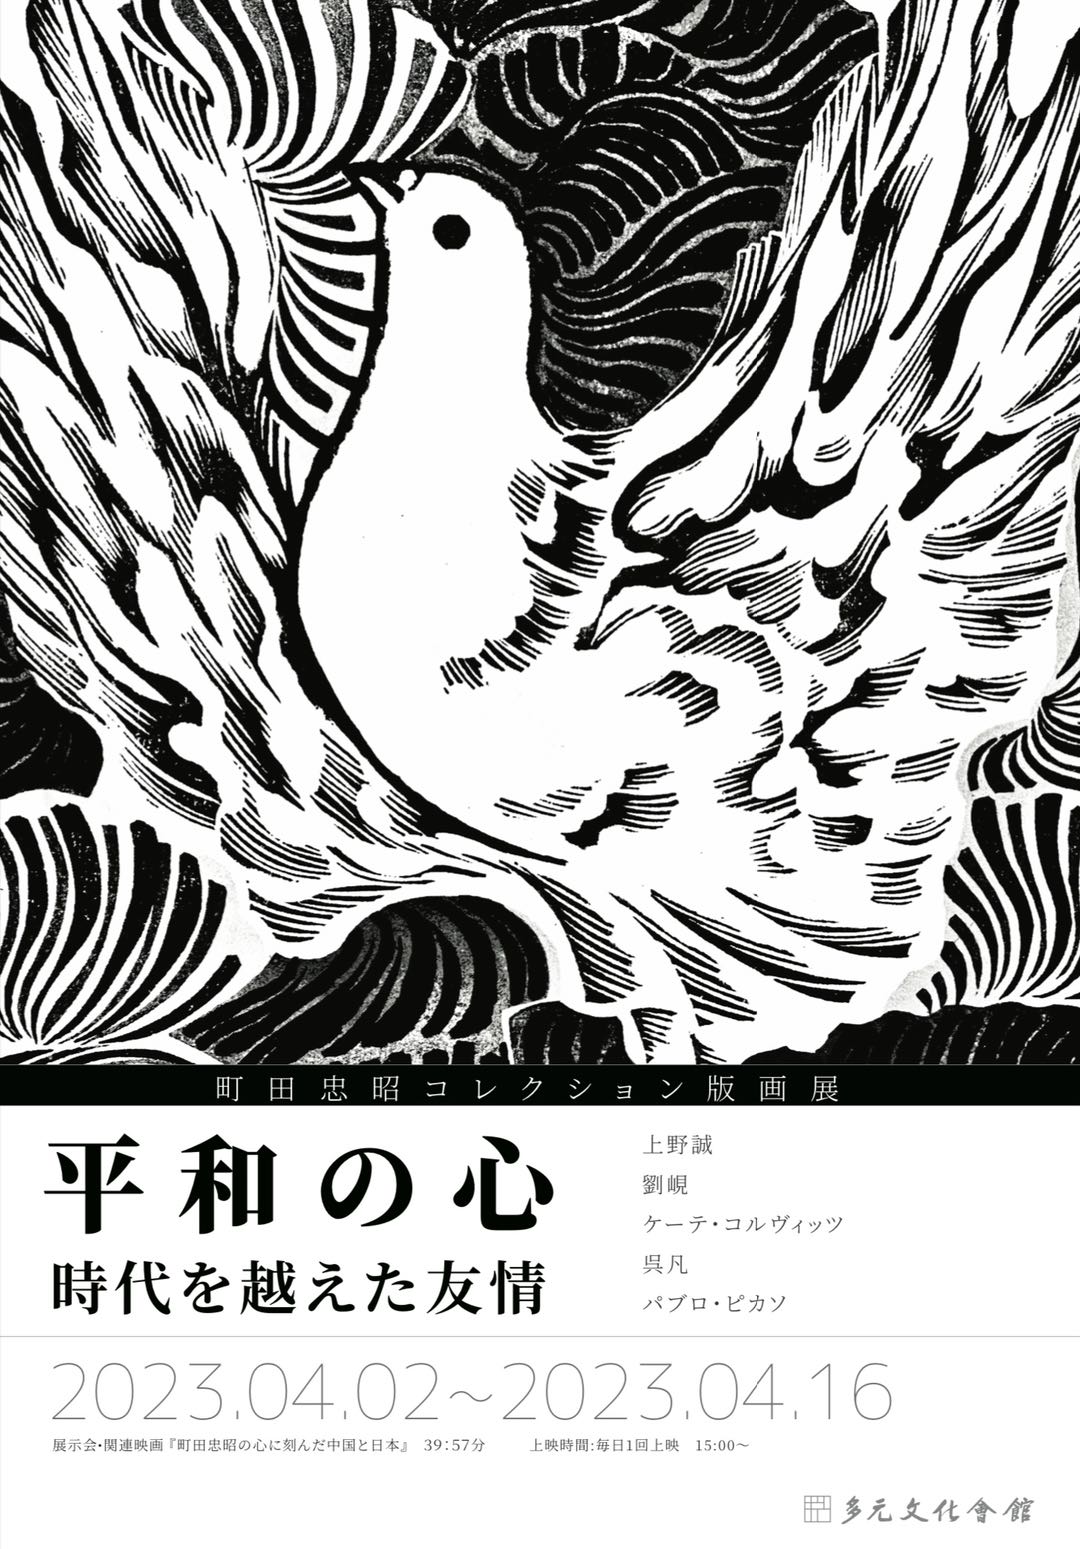 「平和の心:時空を越えた友情」 町田忠昭コレクション版画展